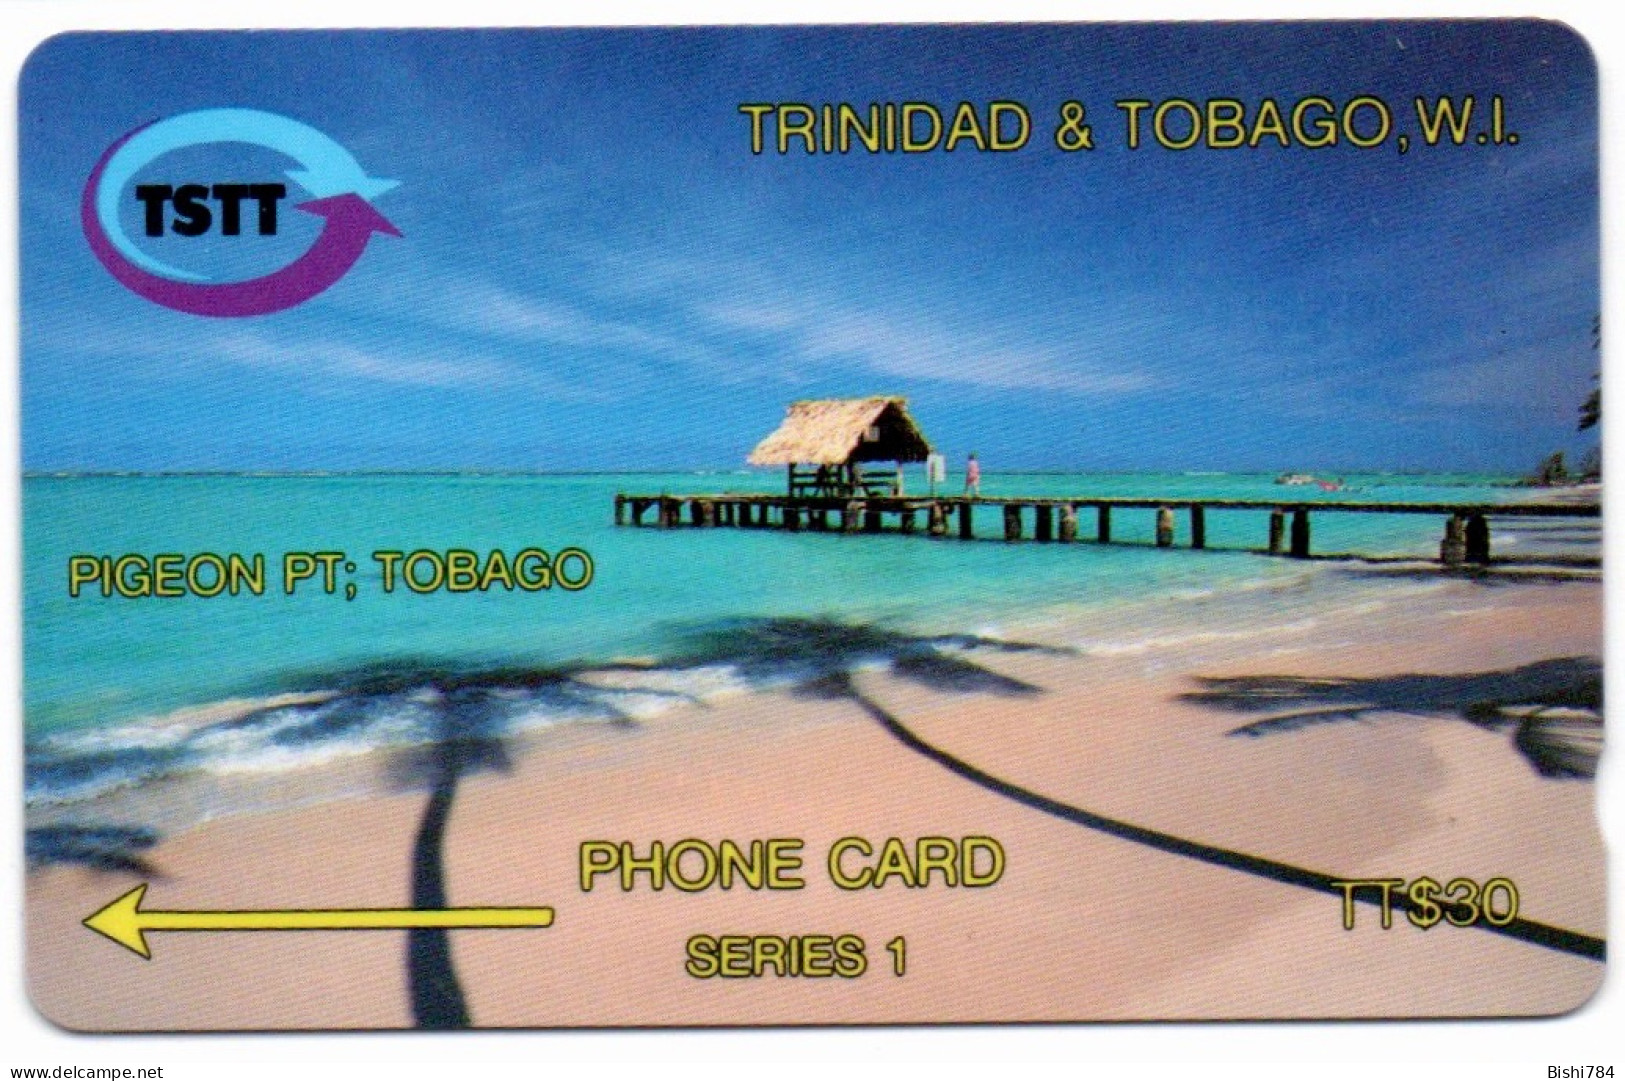 Trinidad & Tobago - Pigeon Point - 3CTTB - Trinidad & Tobago